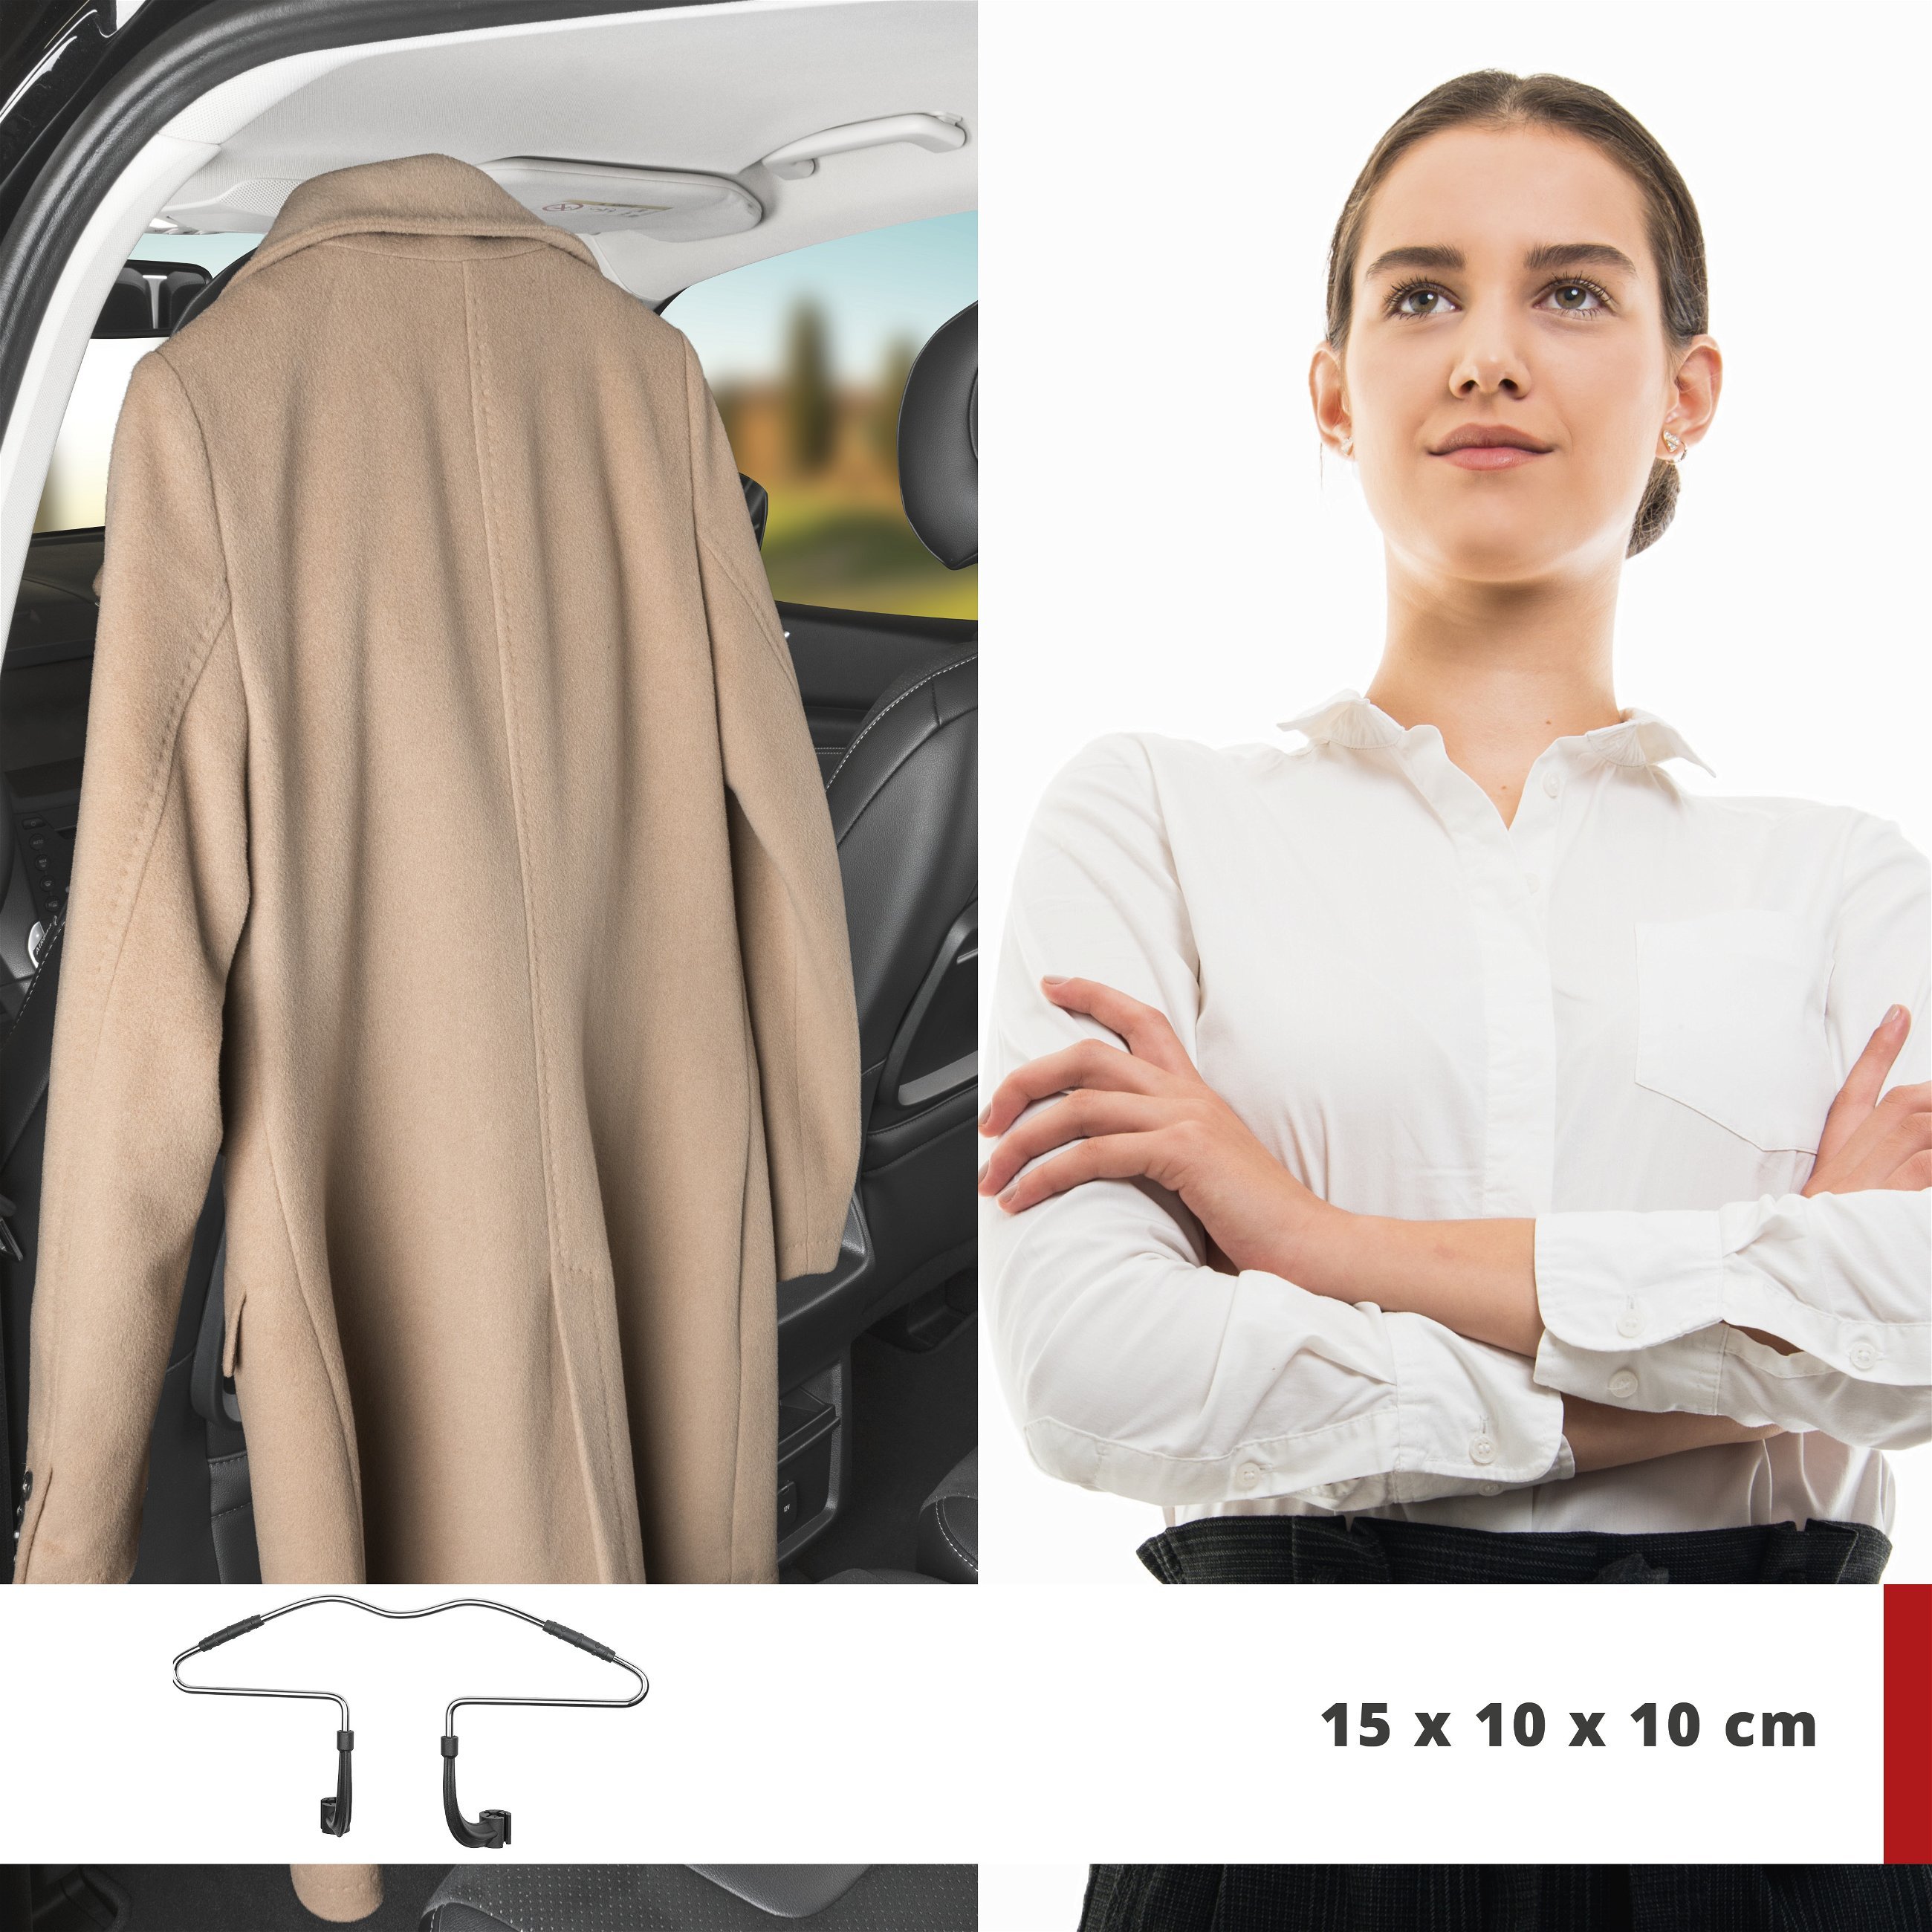 Car coat hanger for headrest, steel